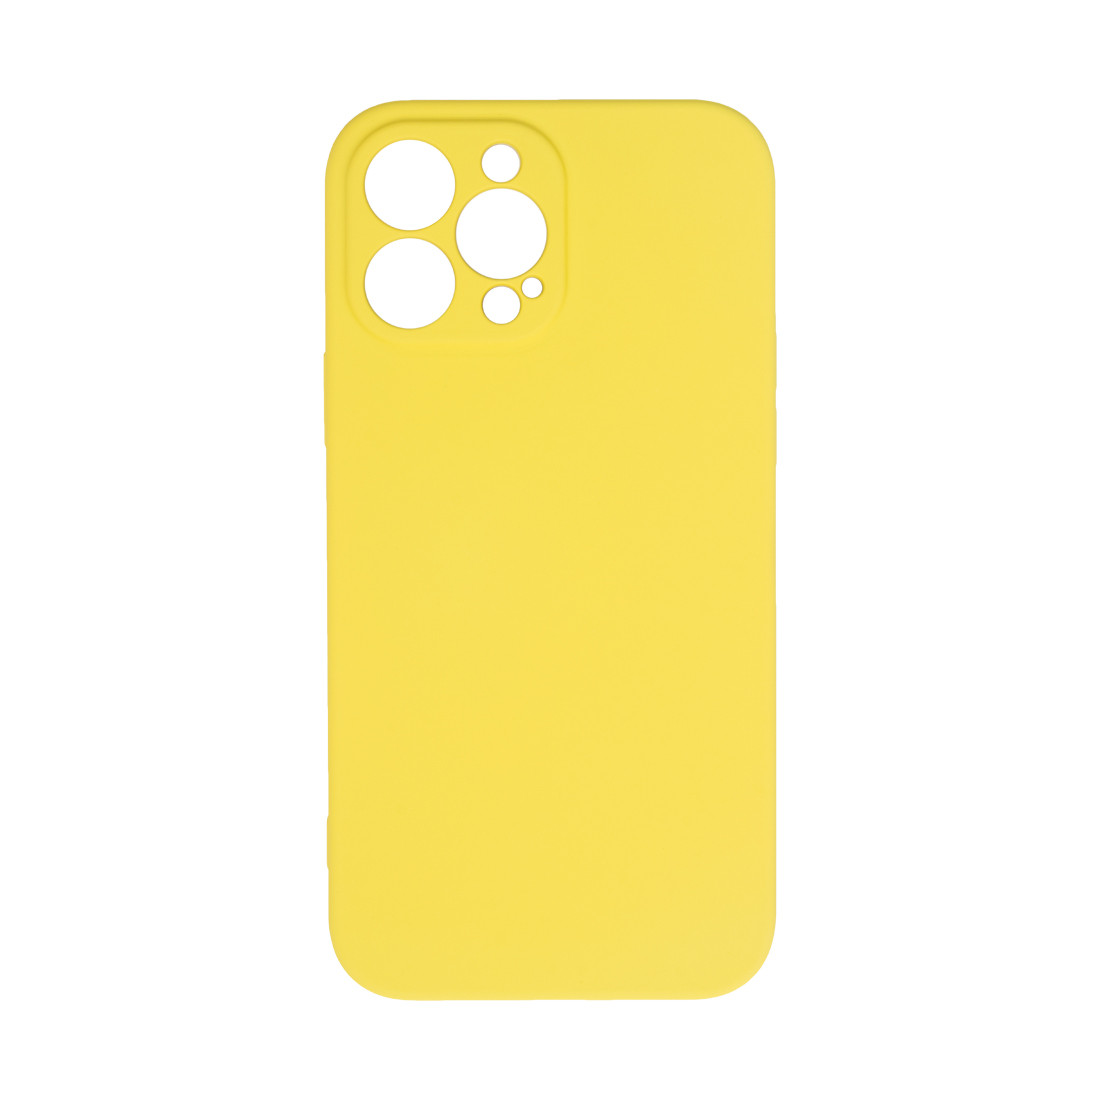 Чехол для телефона  X-Game  XG-HS88  для Iphone 13 Pro Max  Силиконовый  Жёлтый  Пол. пакет